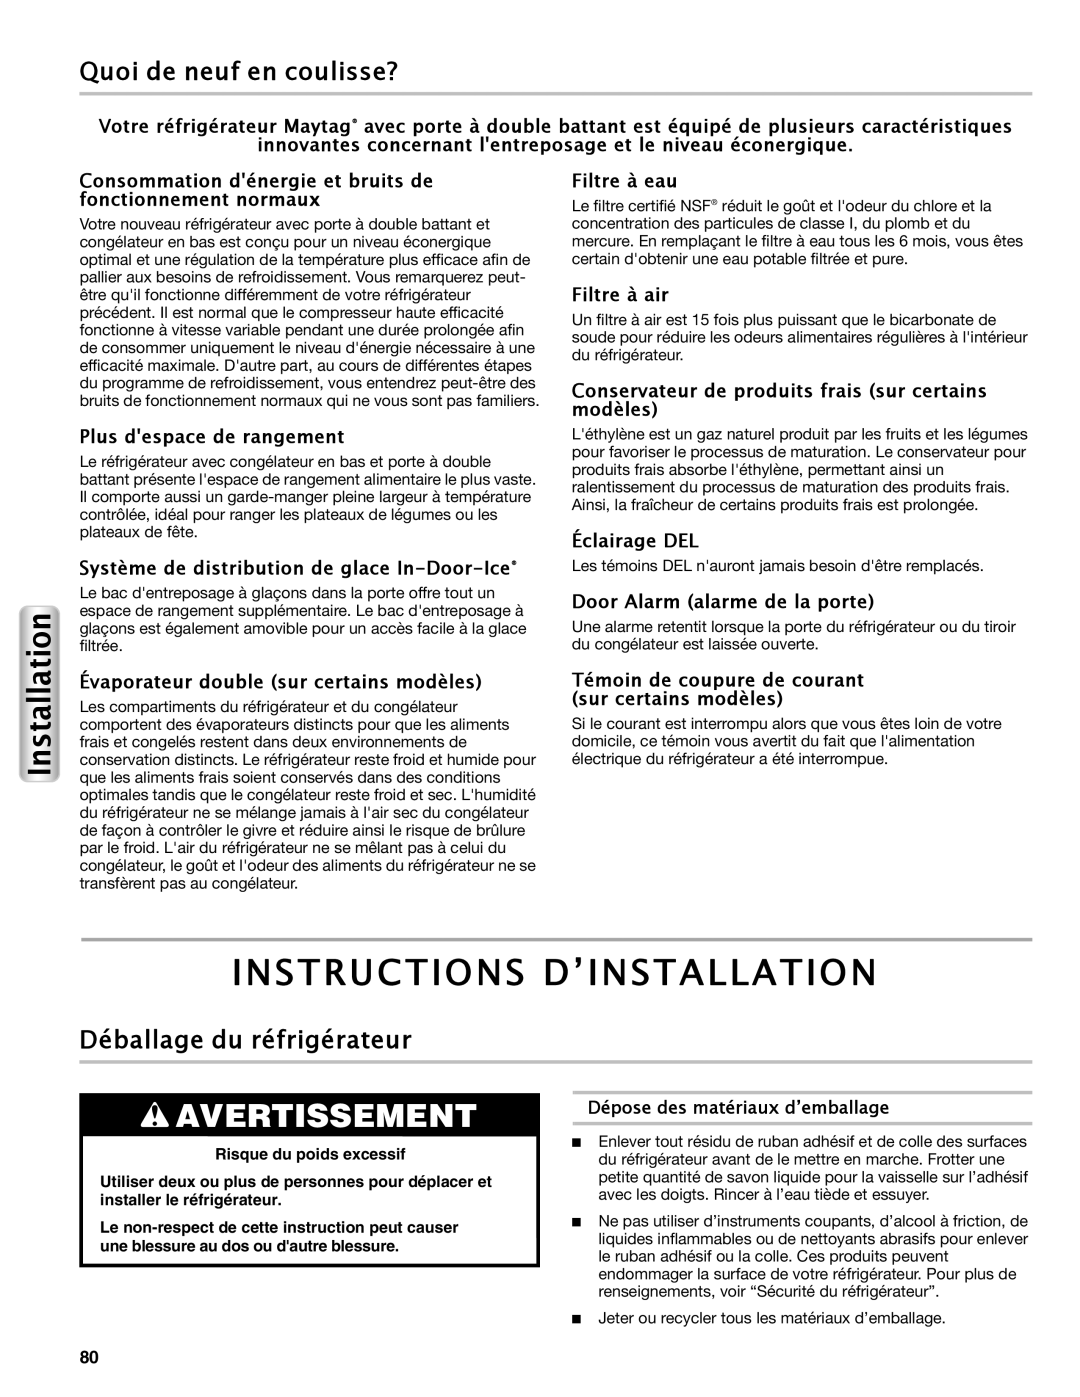 Maytag W10558104A manual Instructions D’Installation, Quoi de neuf en coulisse?, Déballage du réfrigérateur, Avertissement 